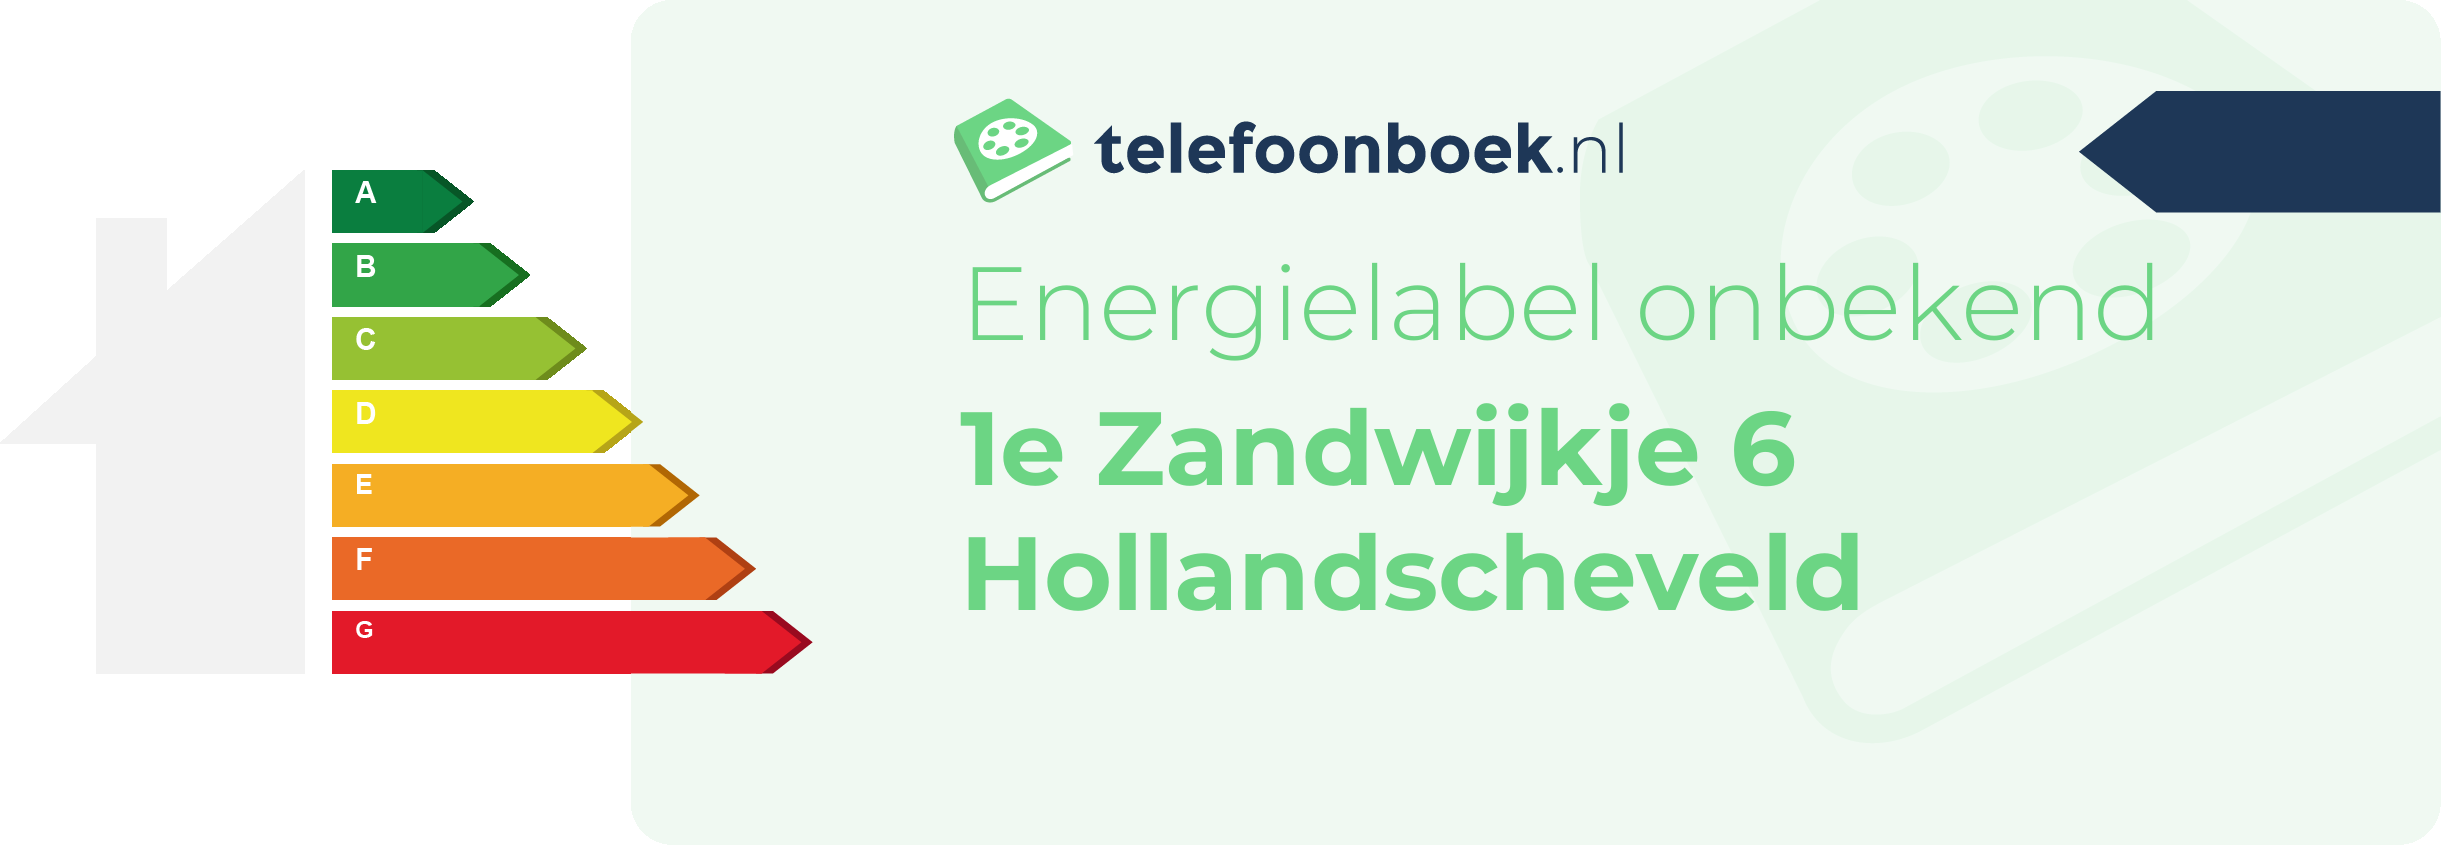 Energielabel 1e Zandwijkje 6 Hollandscheveld